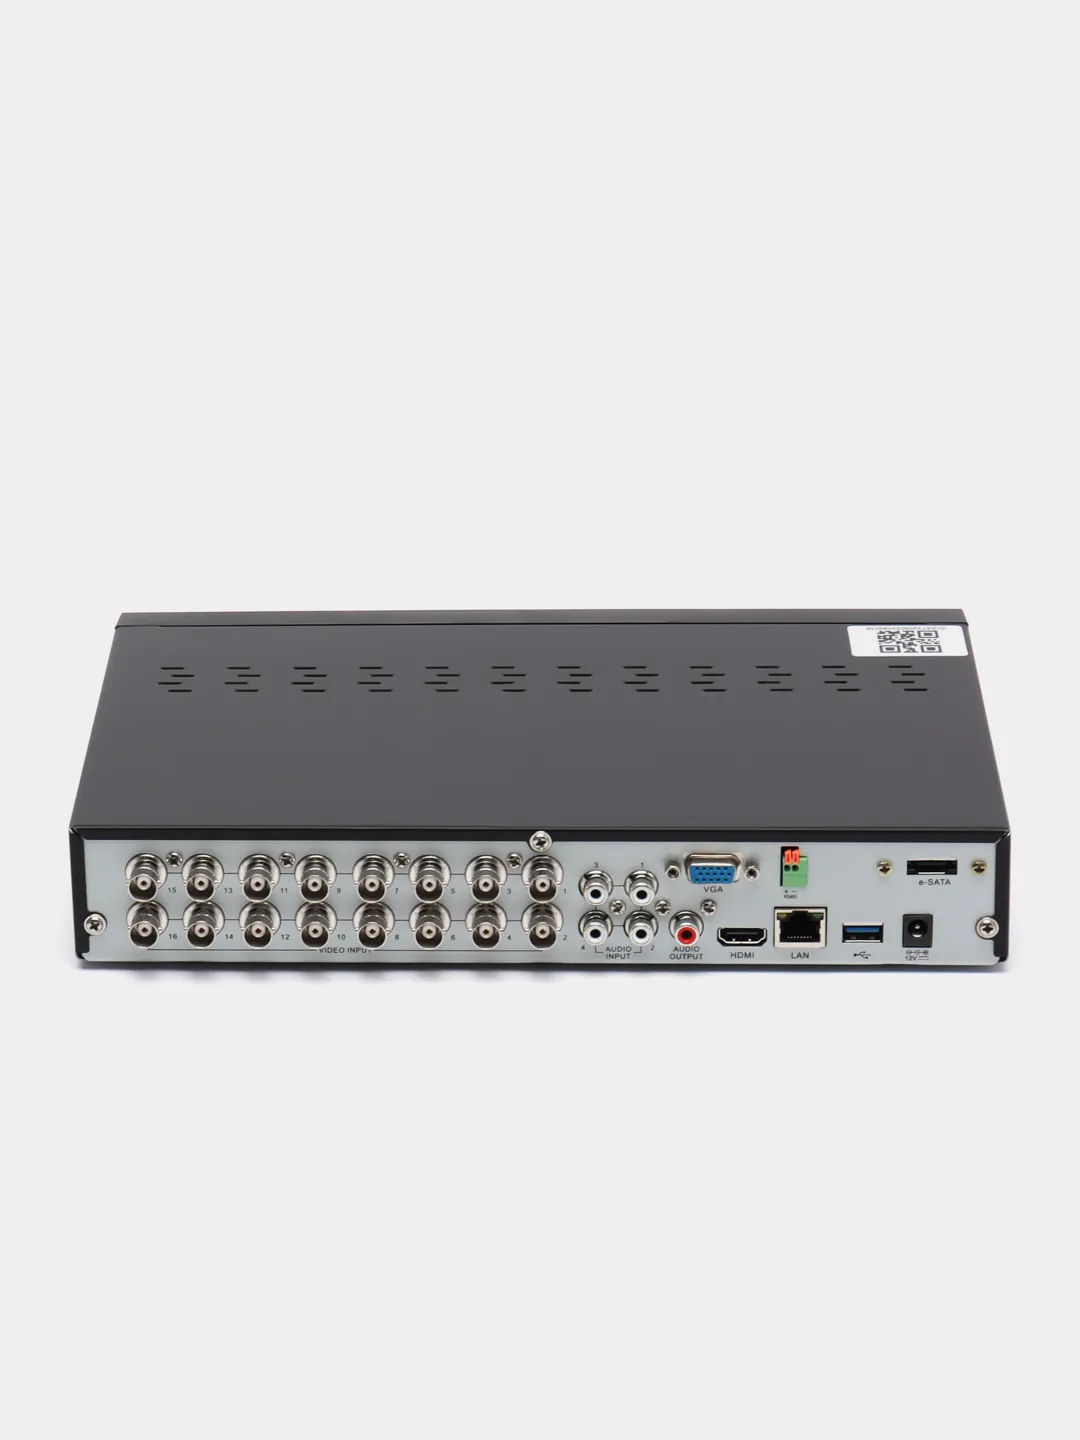 SVR-6110n v3.0 видеорегистратор гибридный. Подключение регистратора гибрид Эльбрус. Hybrid регистратор